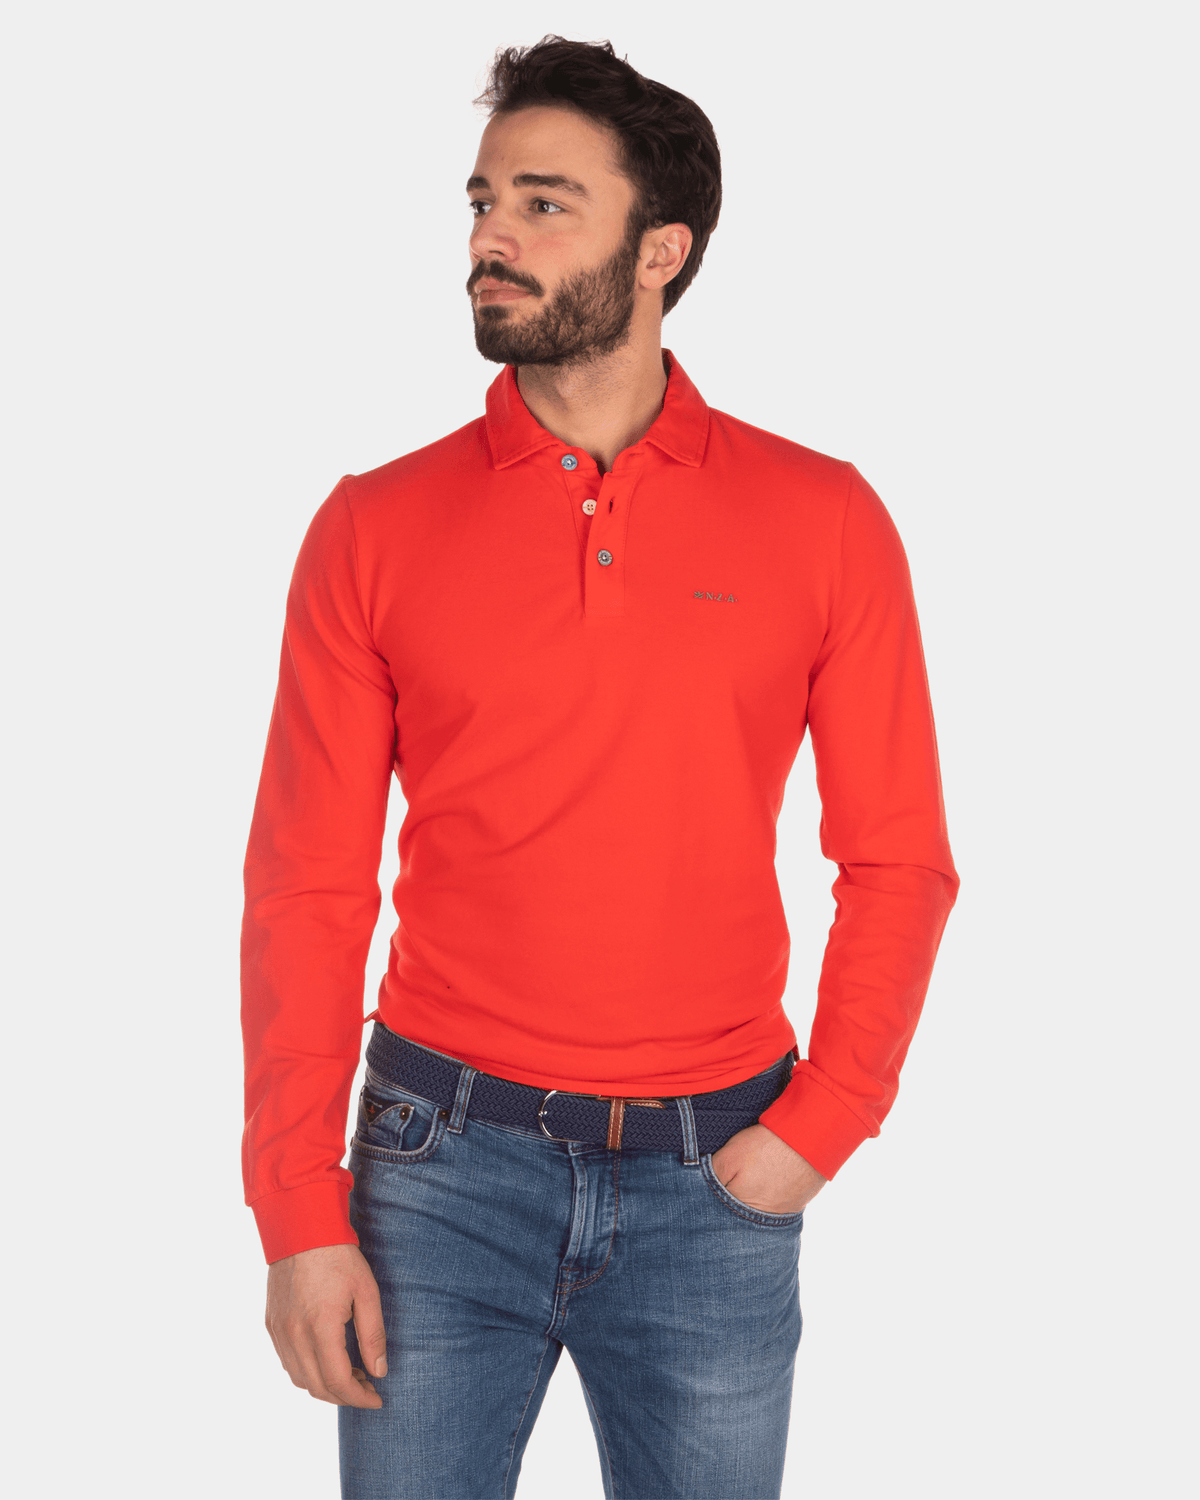 Effen Rugby Shirt - Orange Red